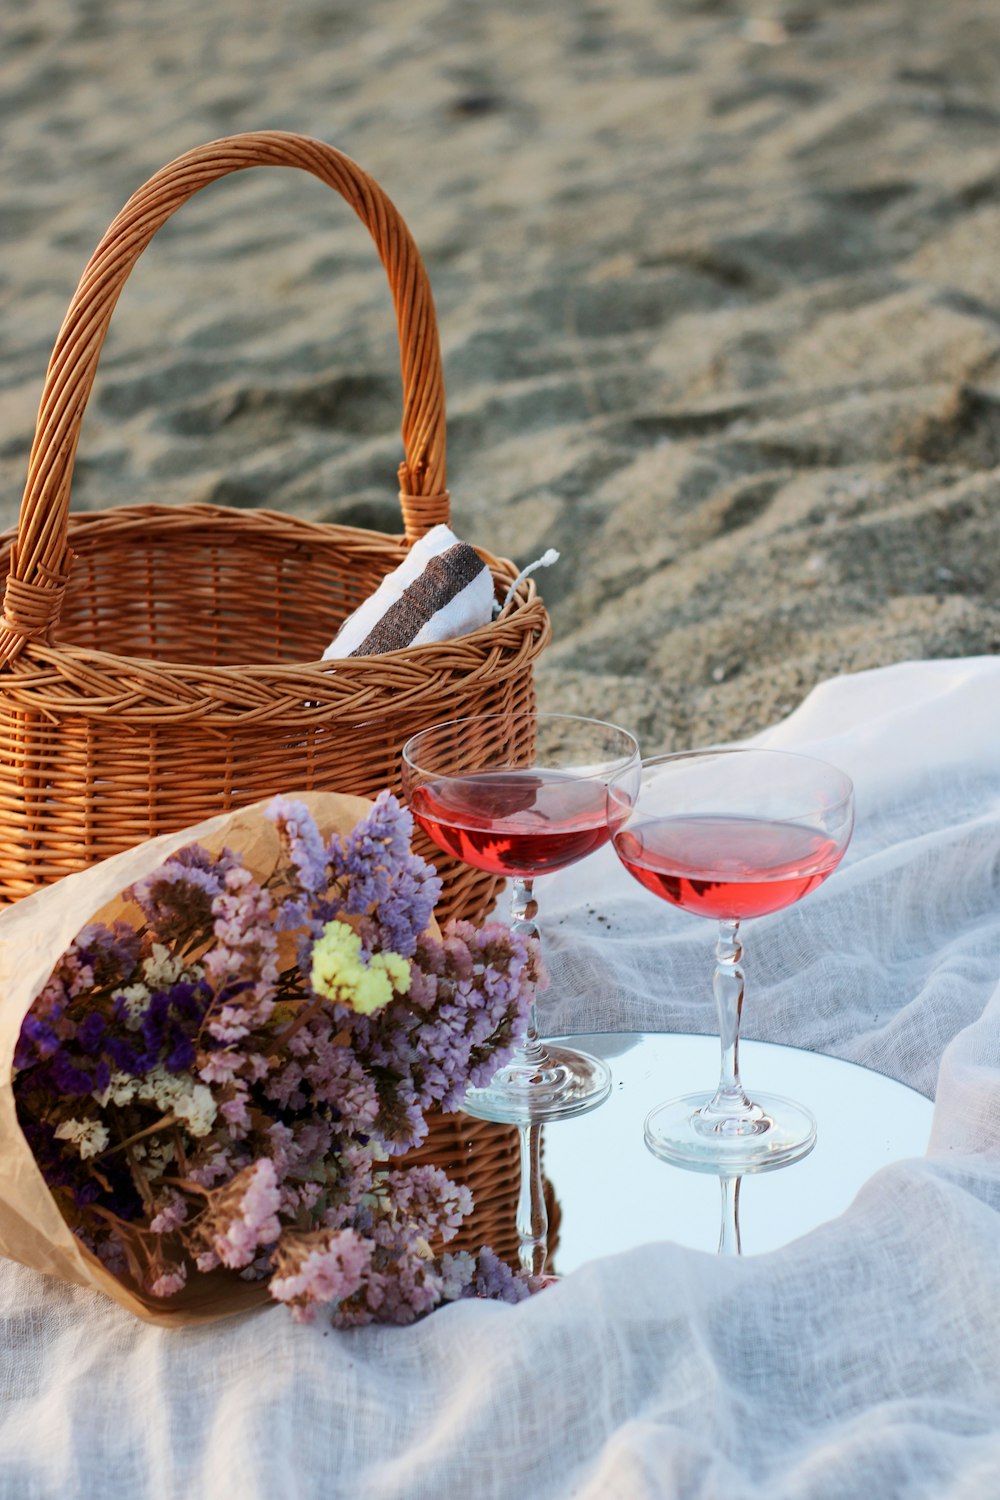 白いテーブルクロスに透明なワイングラスの横の茶色の編まれたバスケットにピンクと白の花